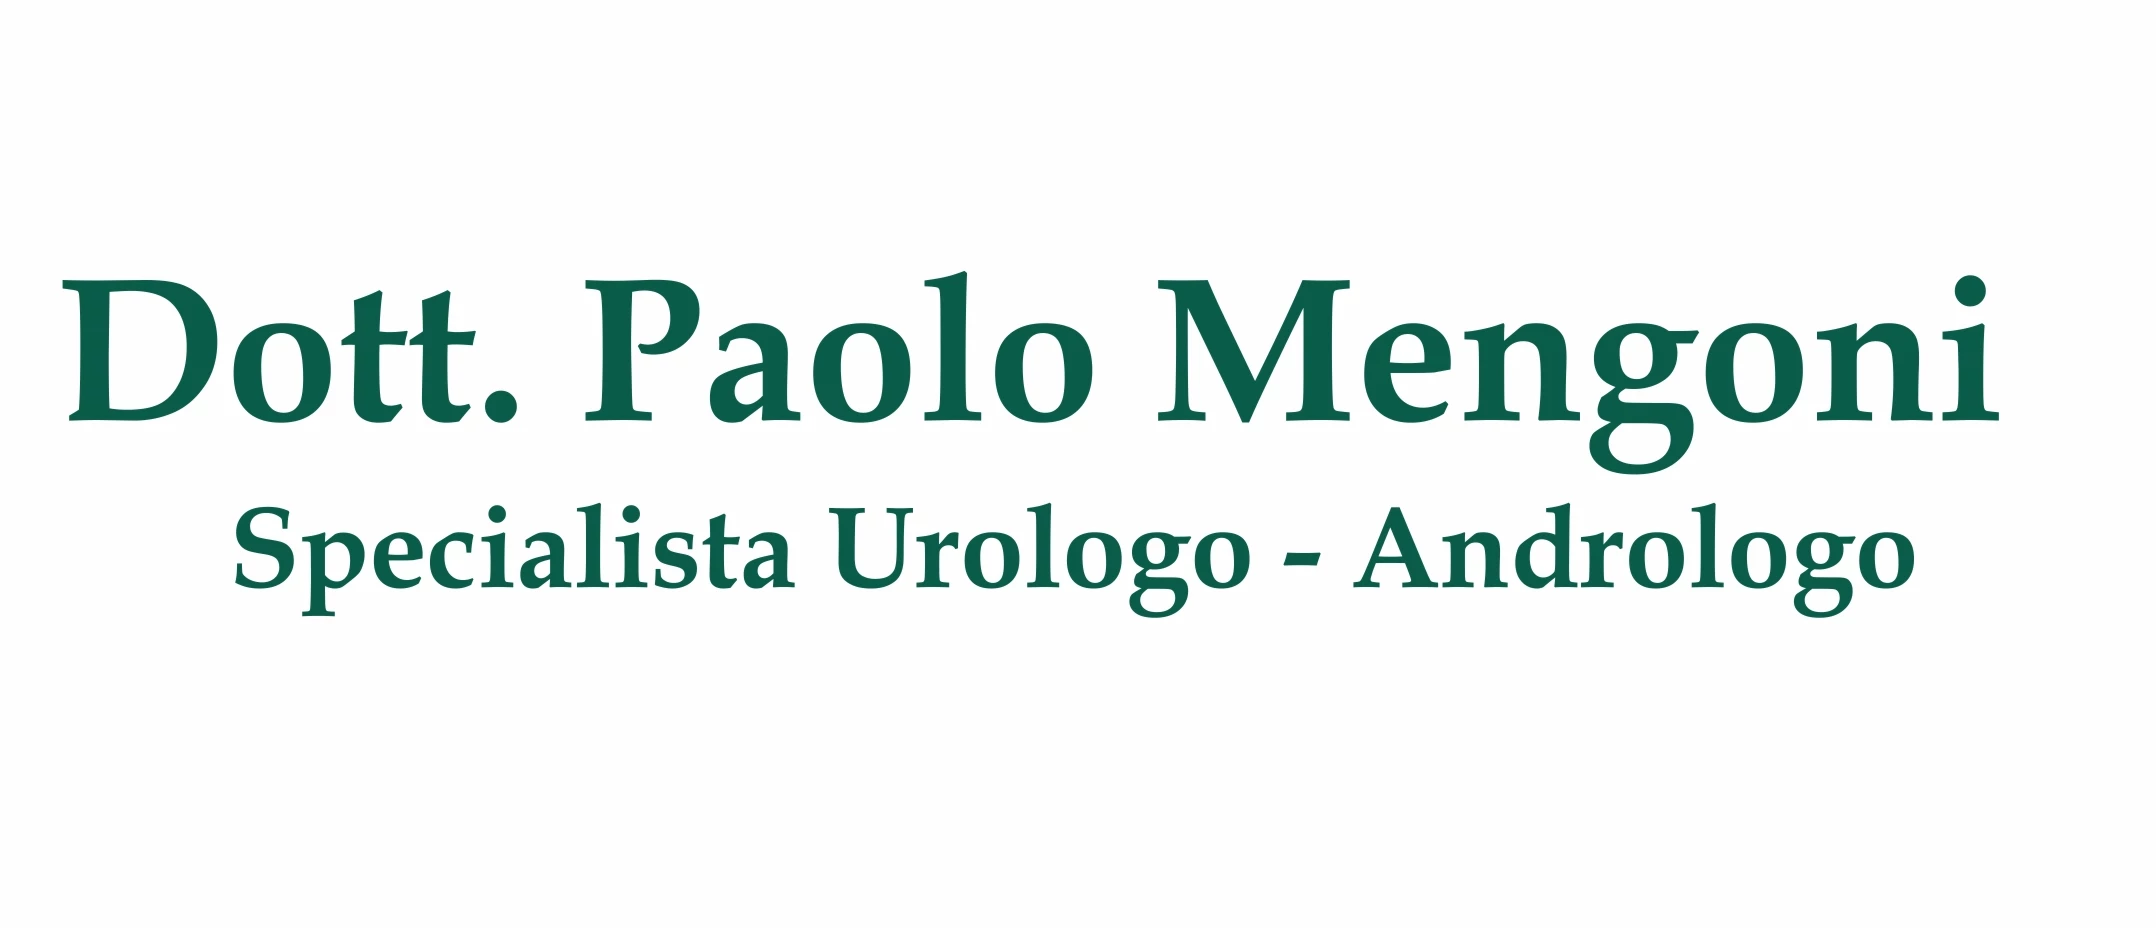 DOTTOR PAOLO MENGONI - Specialista in Urologia